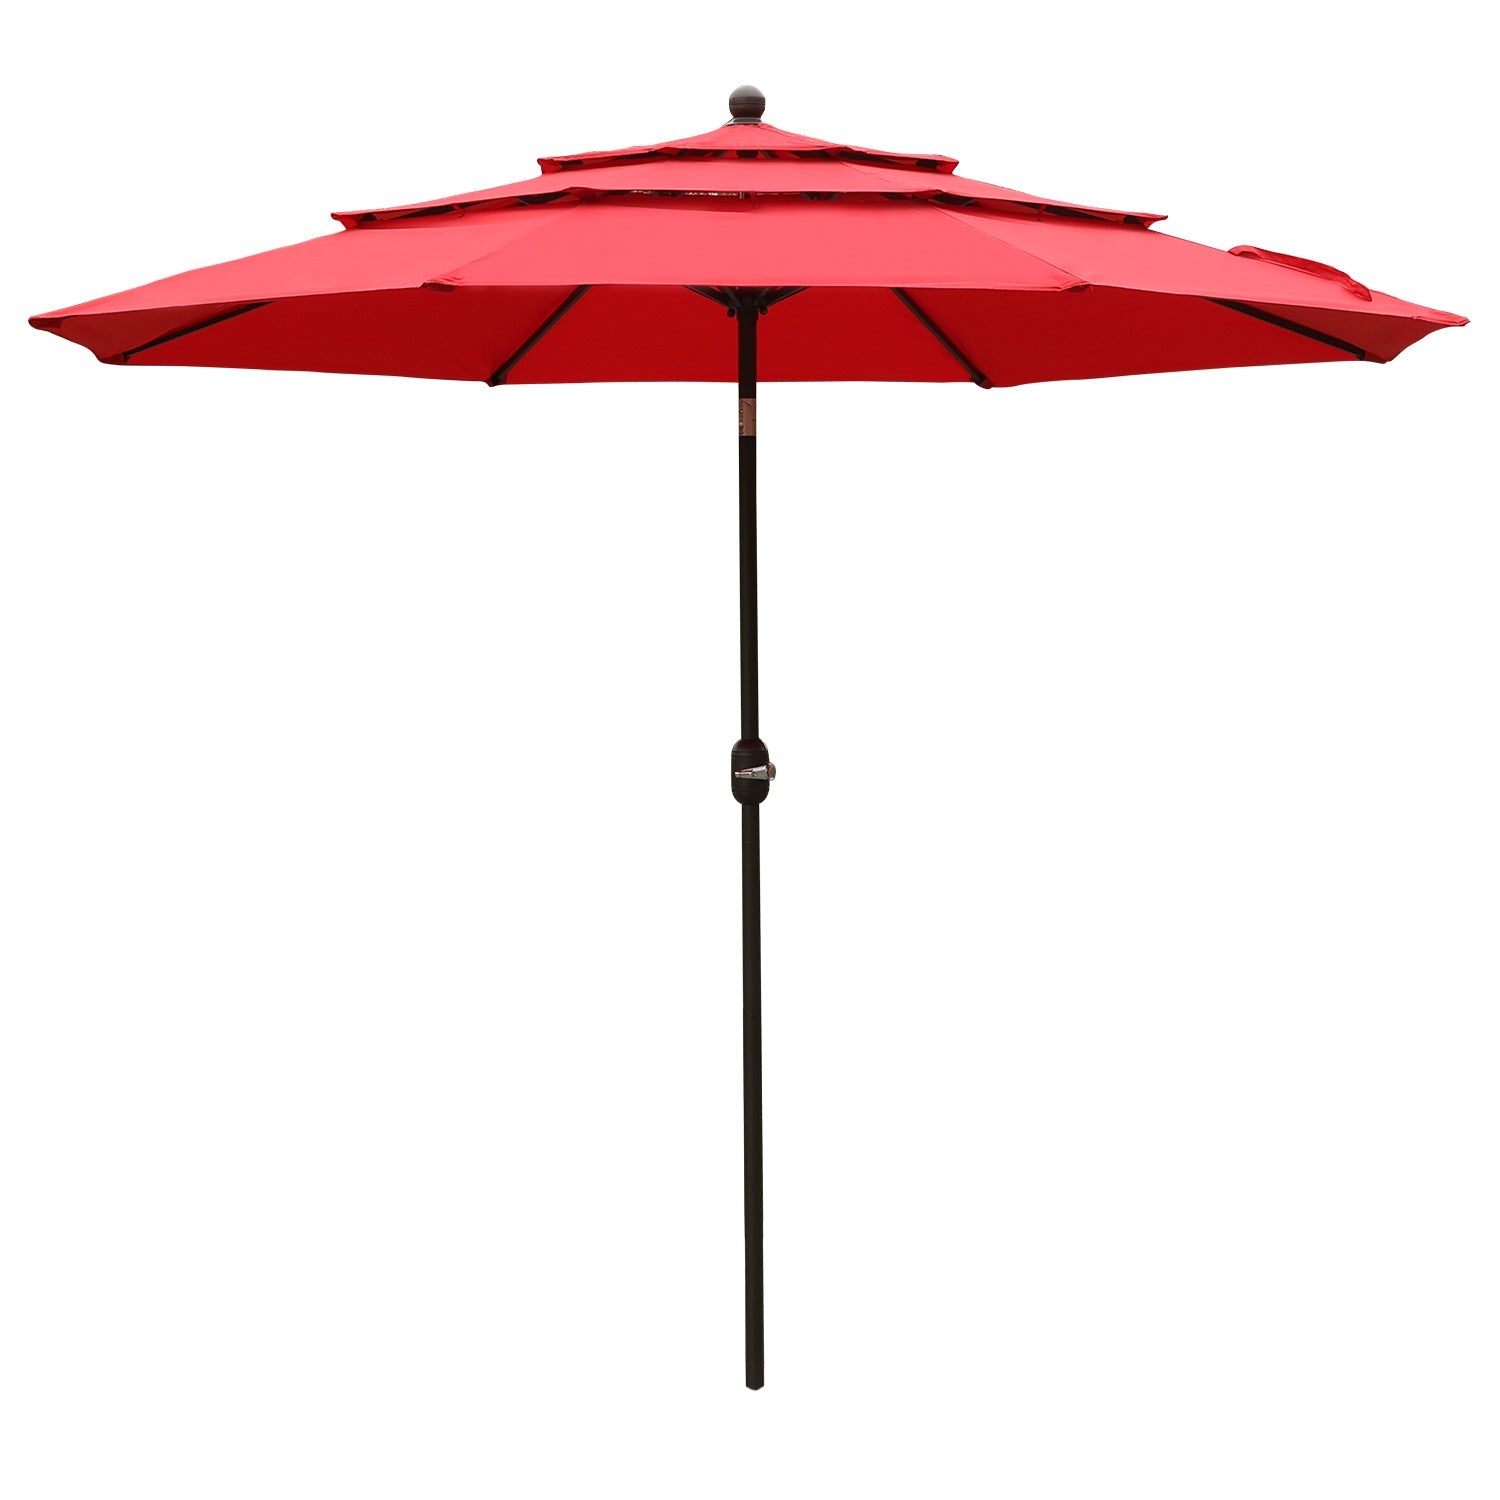 3 Tier 10ft. Patio Umbrella - Market Umbrella with Crank (No Base) Patio Umbrella Aoodor Wine Red  